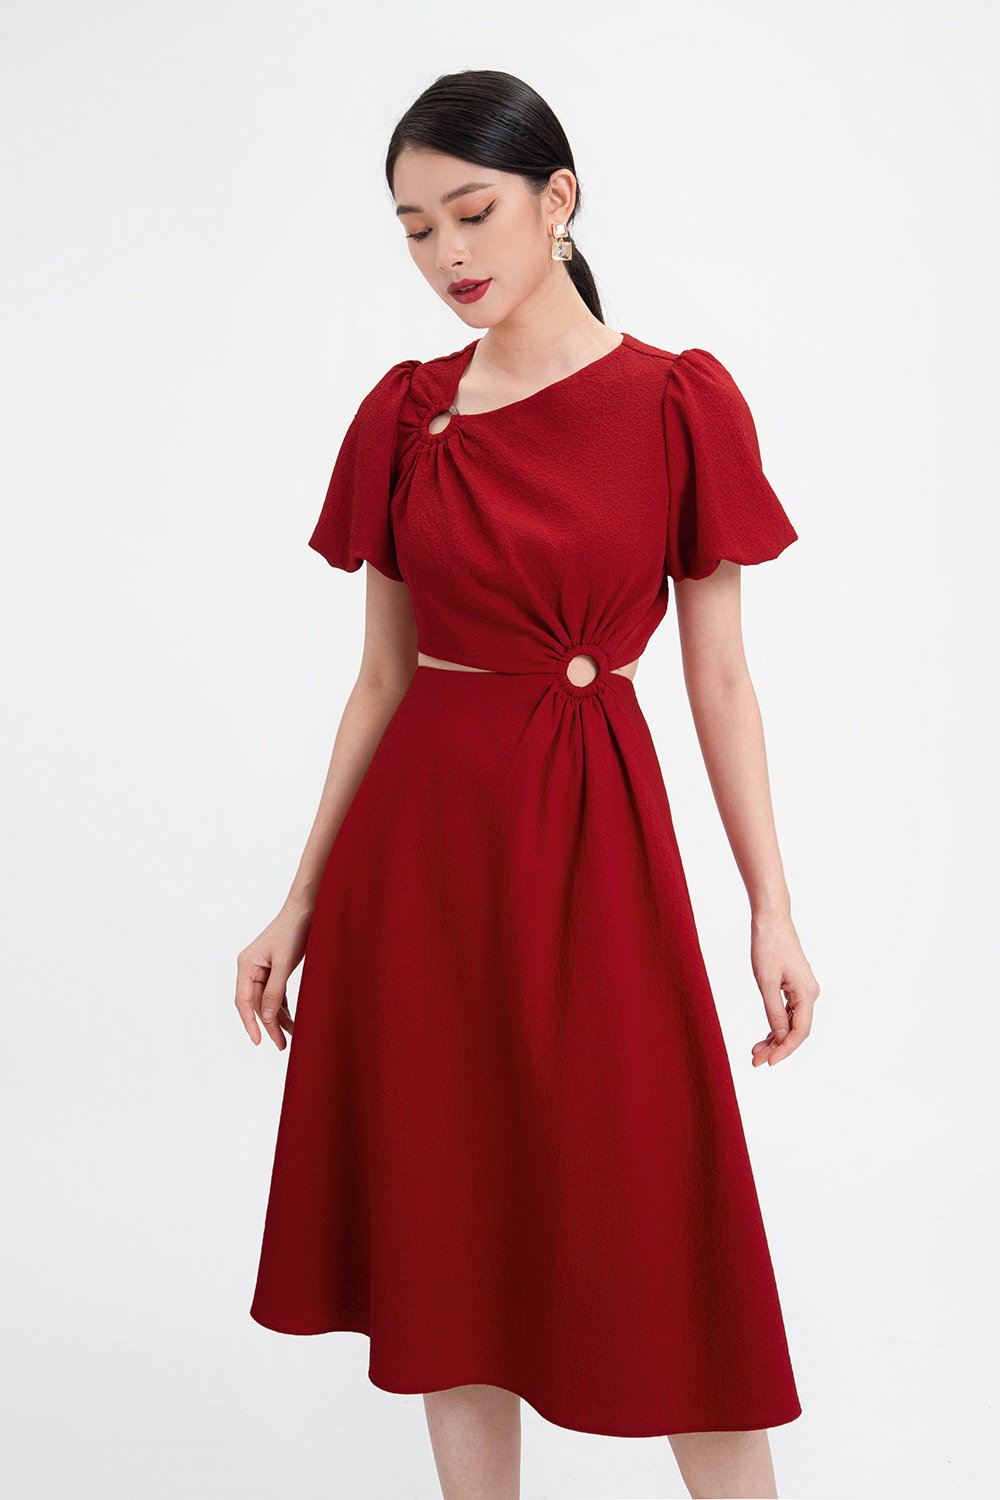 Đầm Xòe Dự Tiệc Màu Đỏ Eo Cut-Out Hl17-20 | Thời Trang Công Sở K&K Fashion